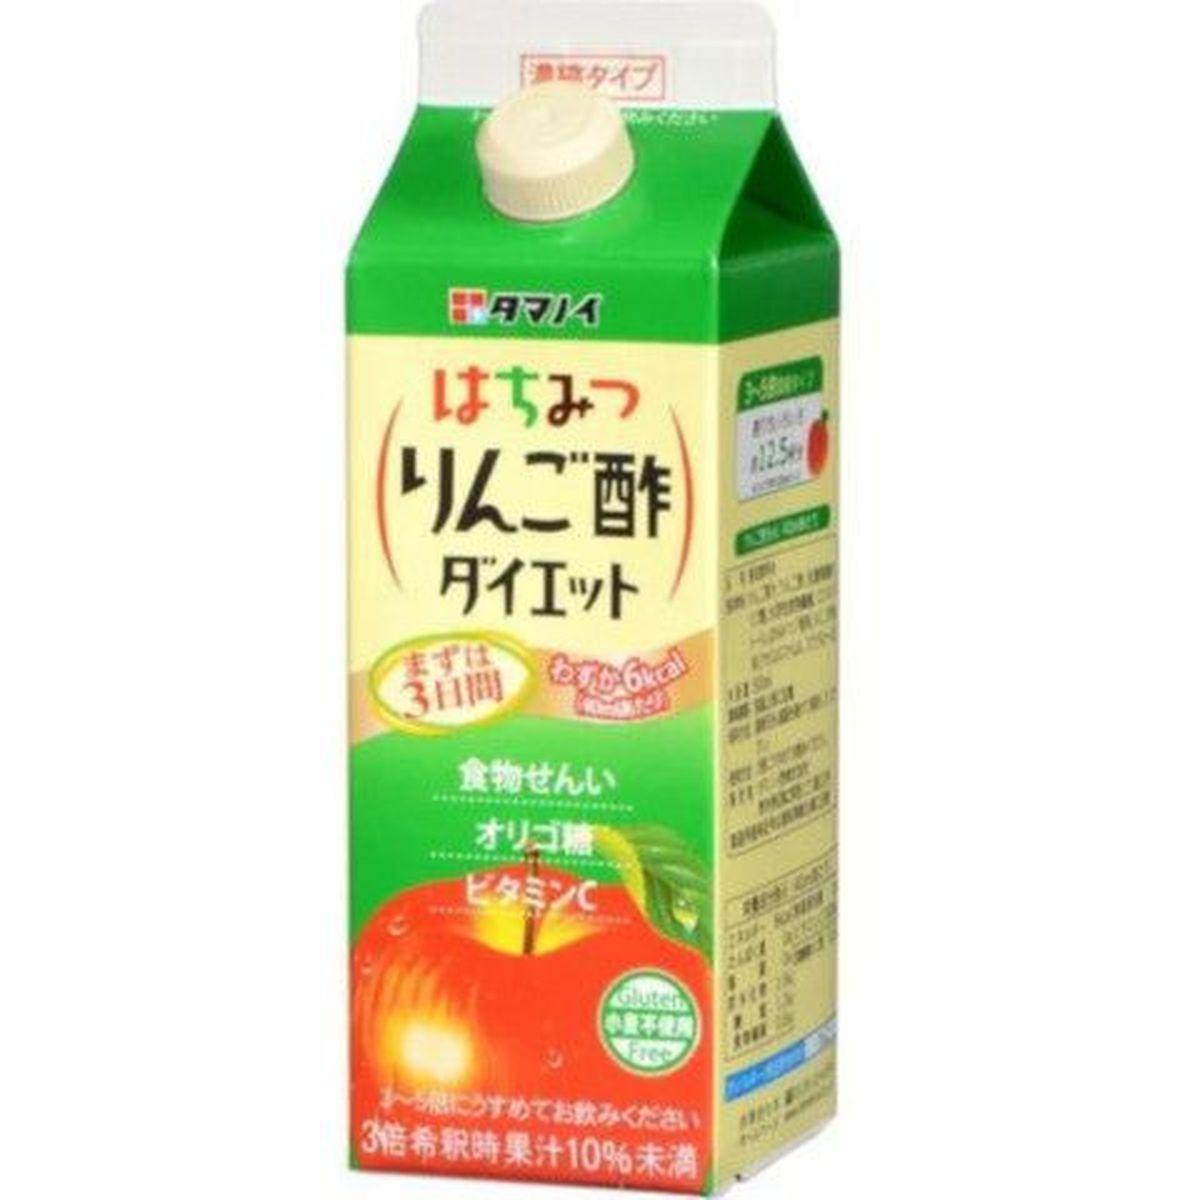 【12個入リ】タマノイ酢 ハチミツリンゴ酢 ダイエット濃縮 500ml